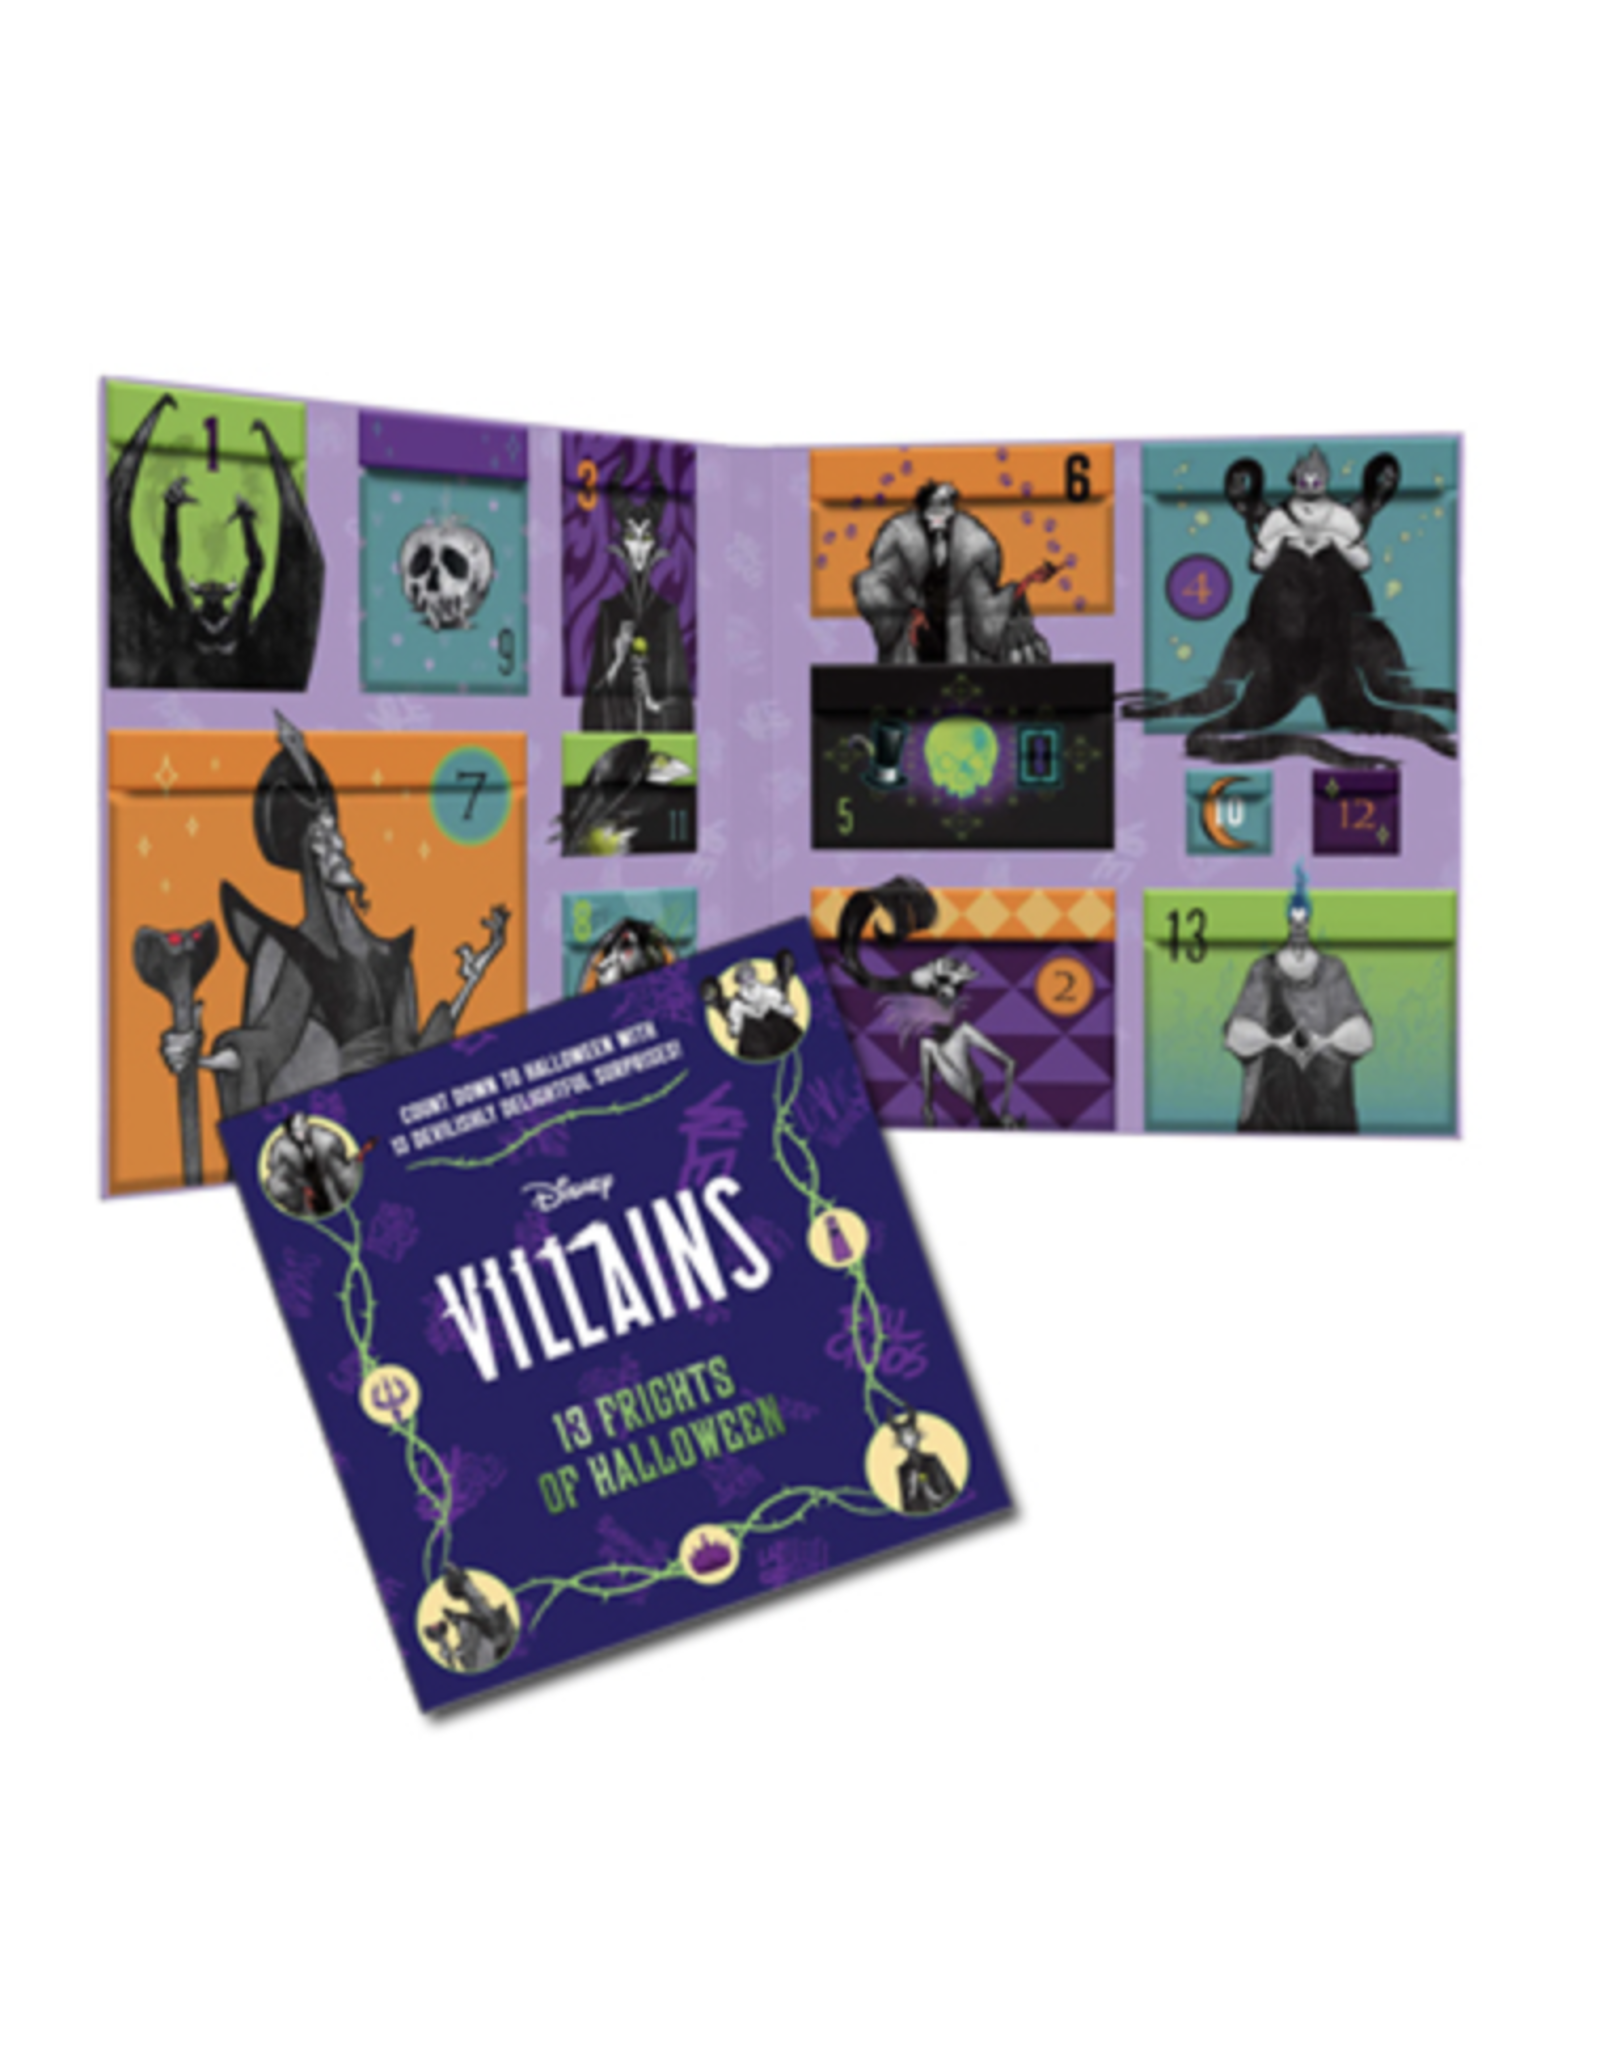 Disney Villains: 13 Frights of Halloween Advent Calendar